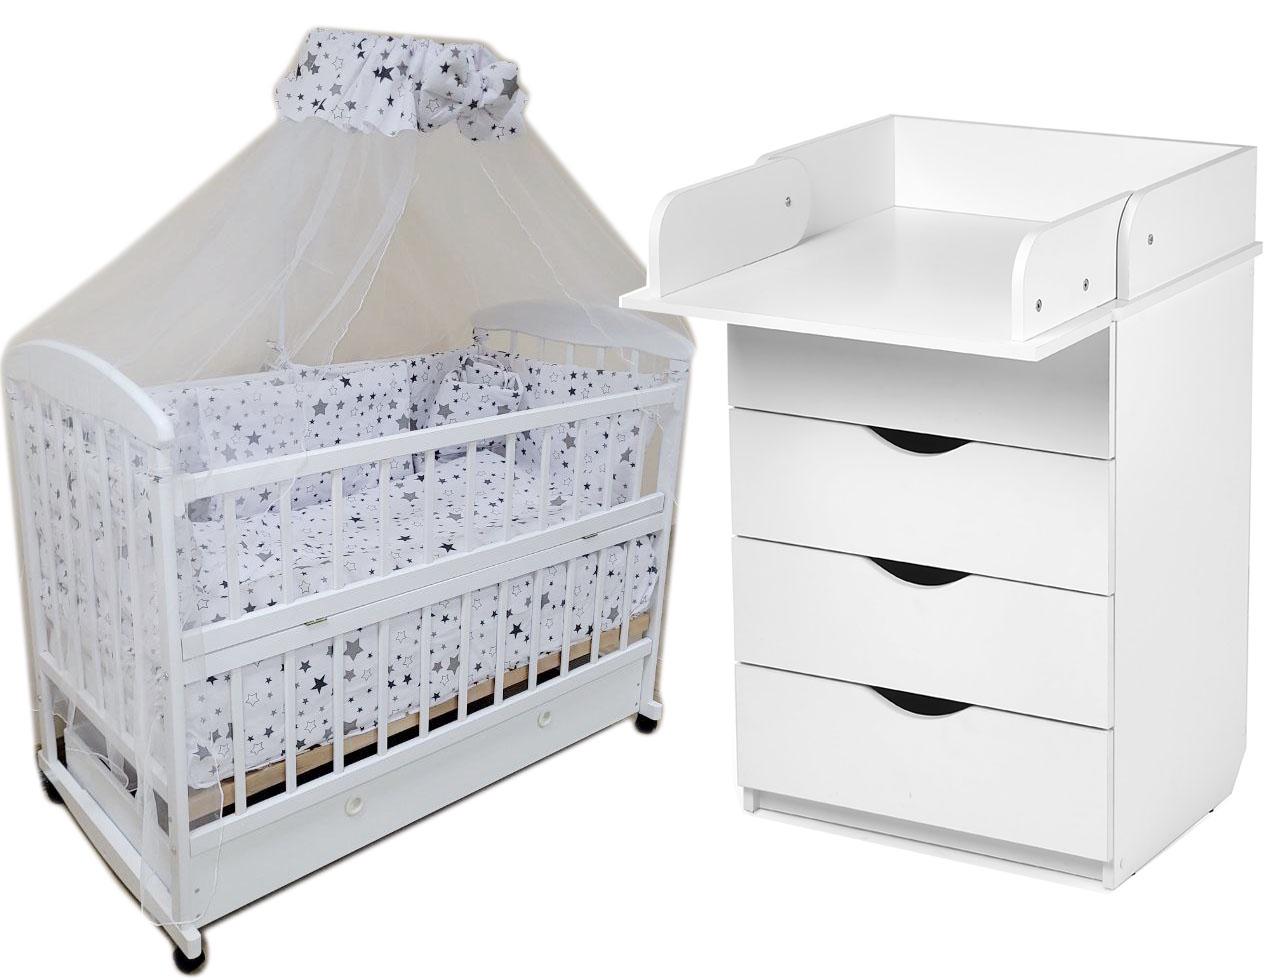 Комплект детской мебели Baby Наталка Карапуз комод/кровать/матрас/постельный набор 9 эл. Белый